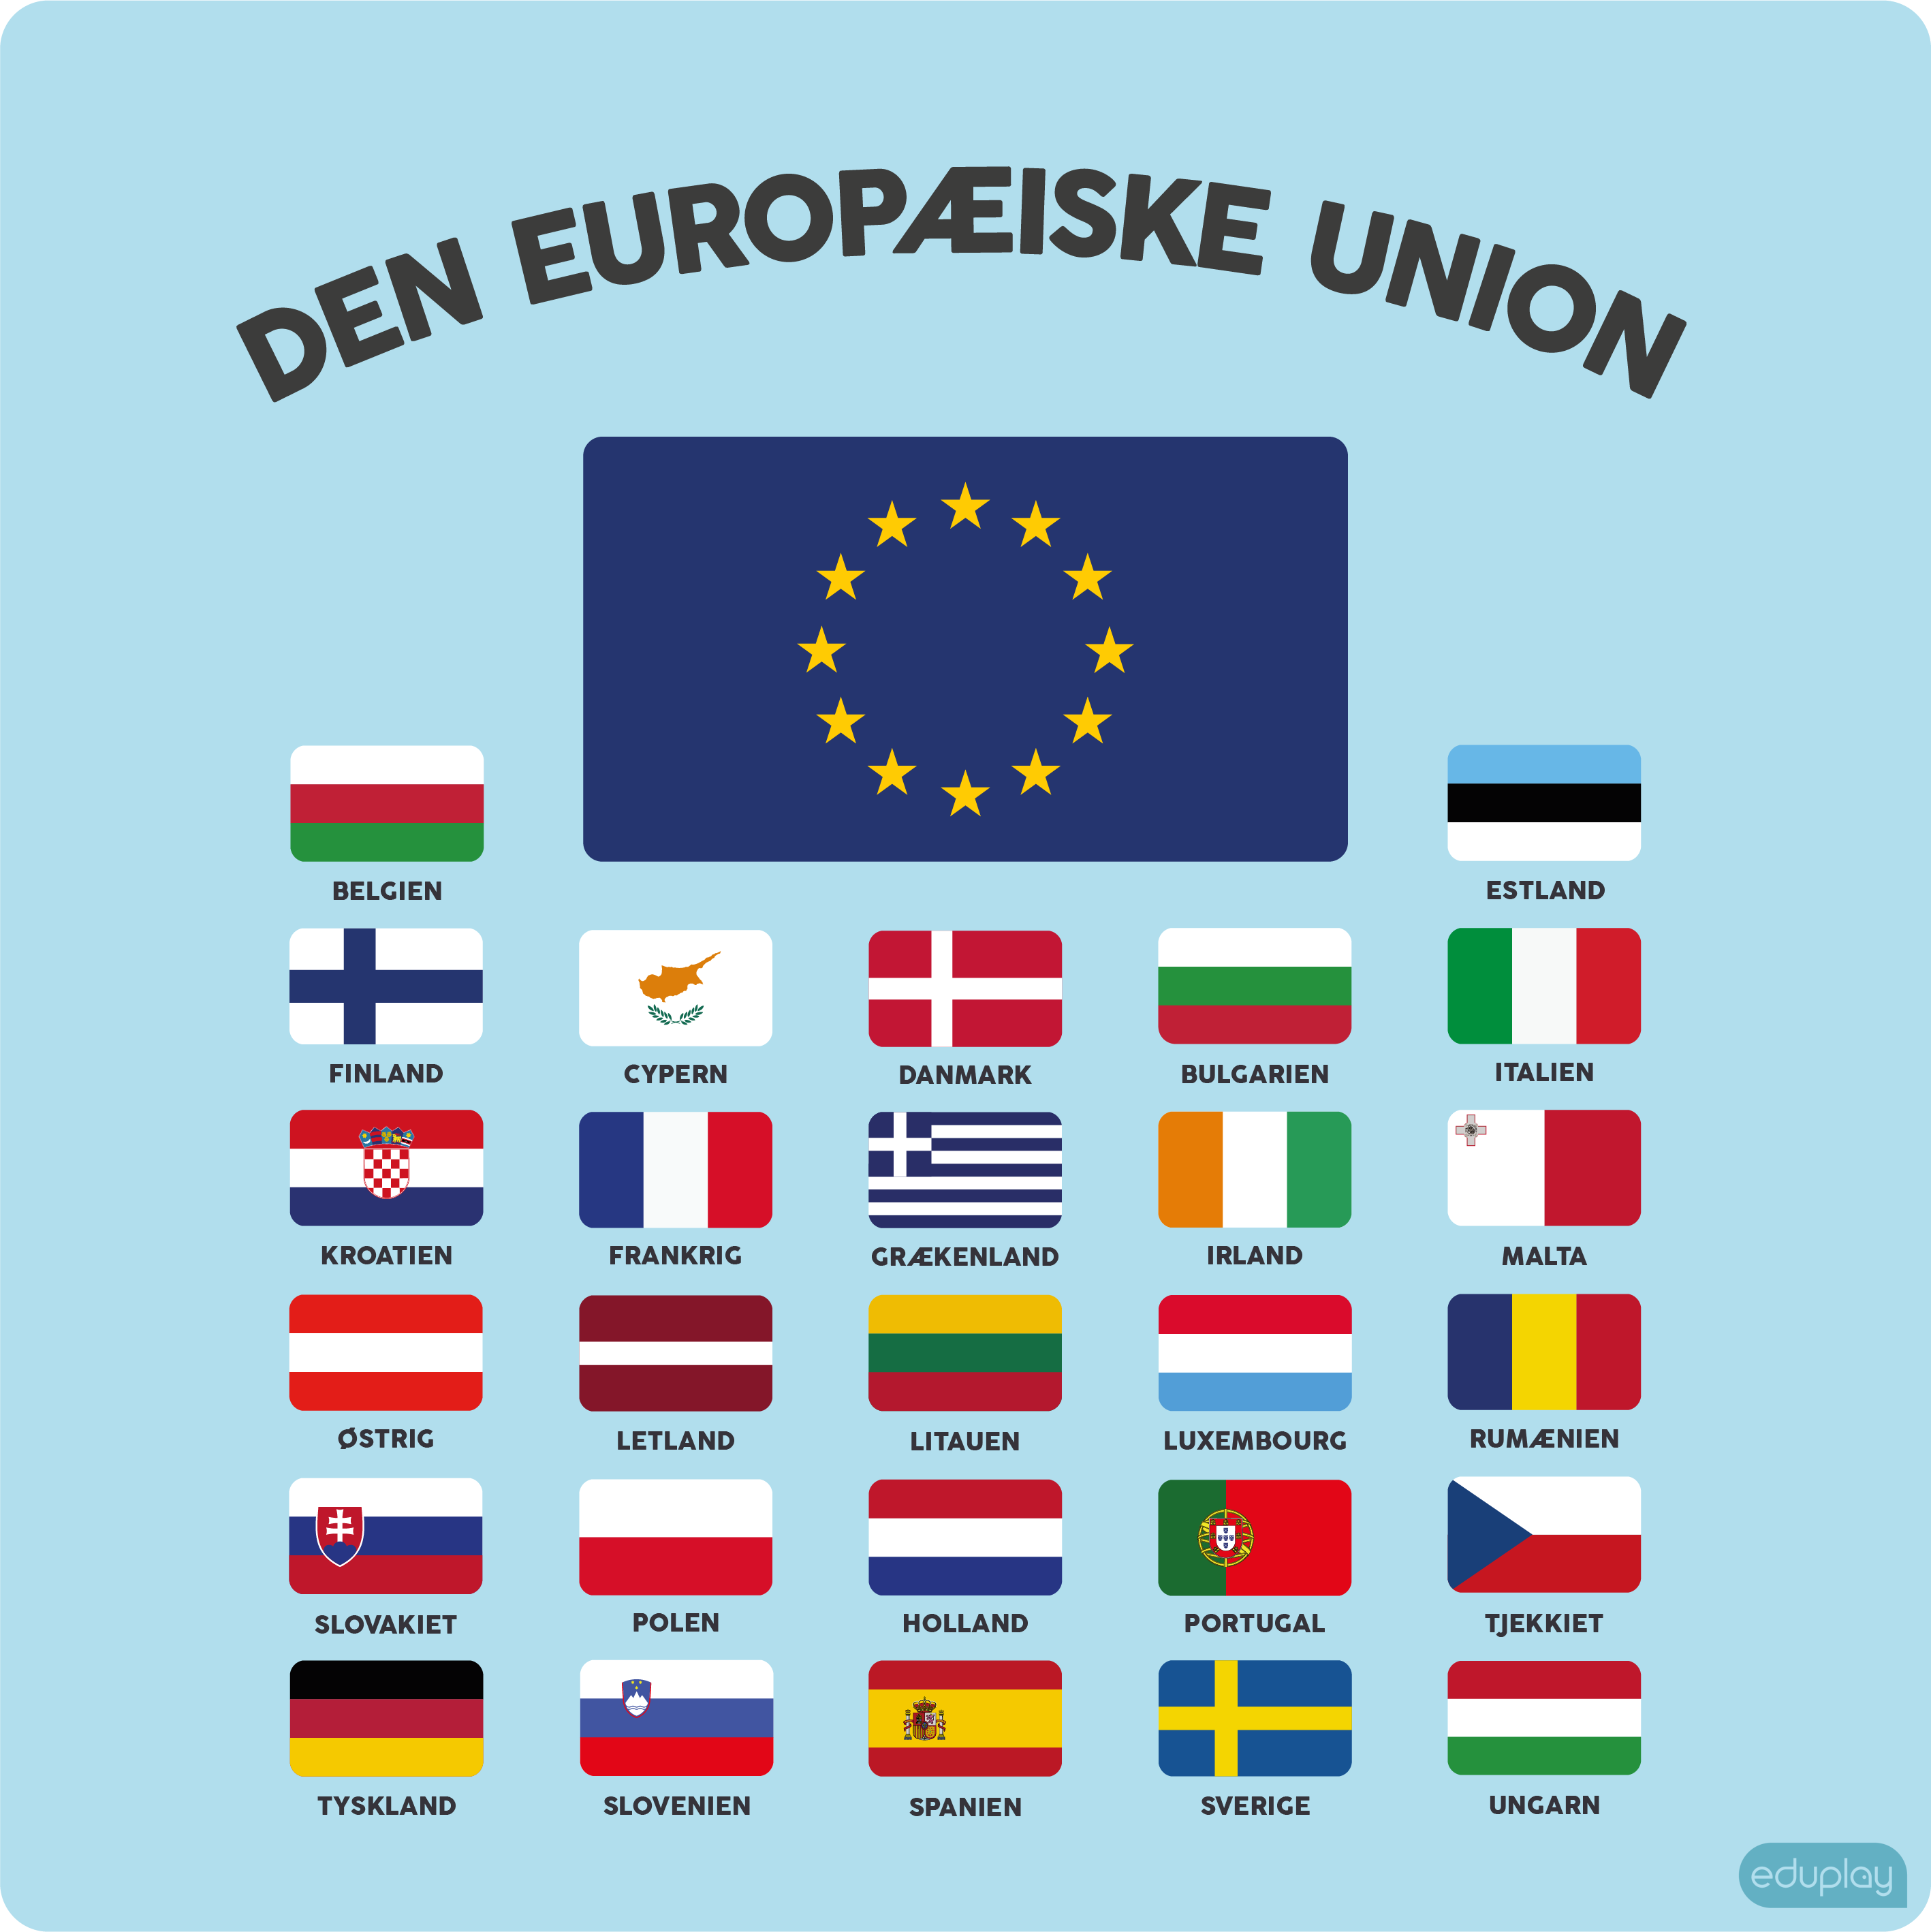 Den Europiske Union